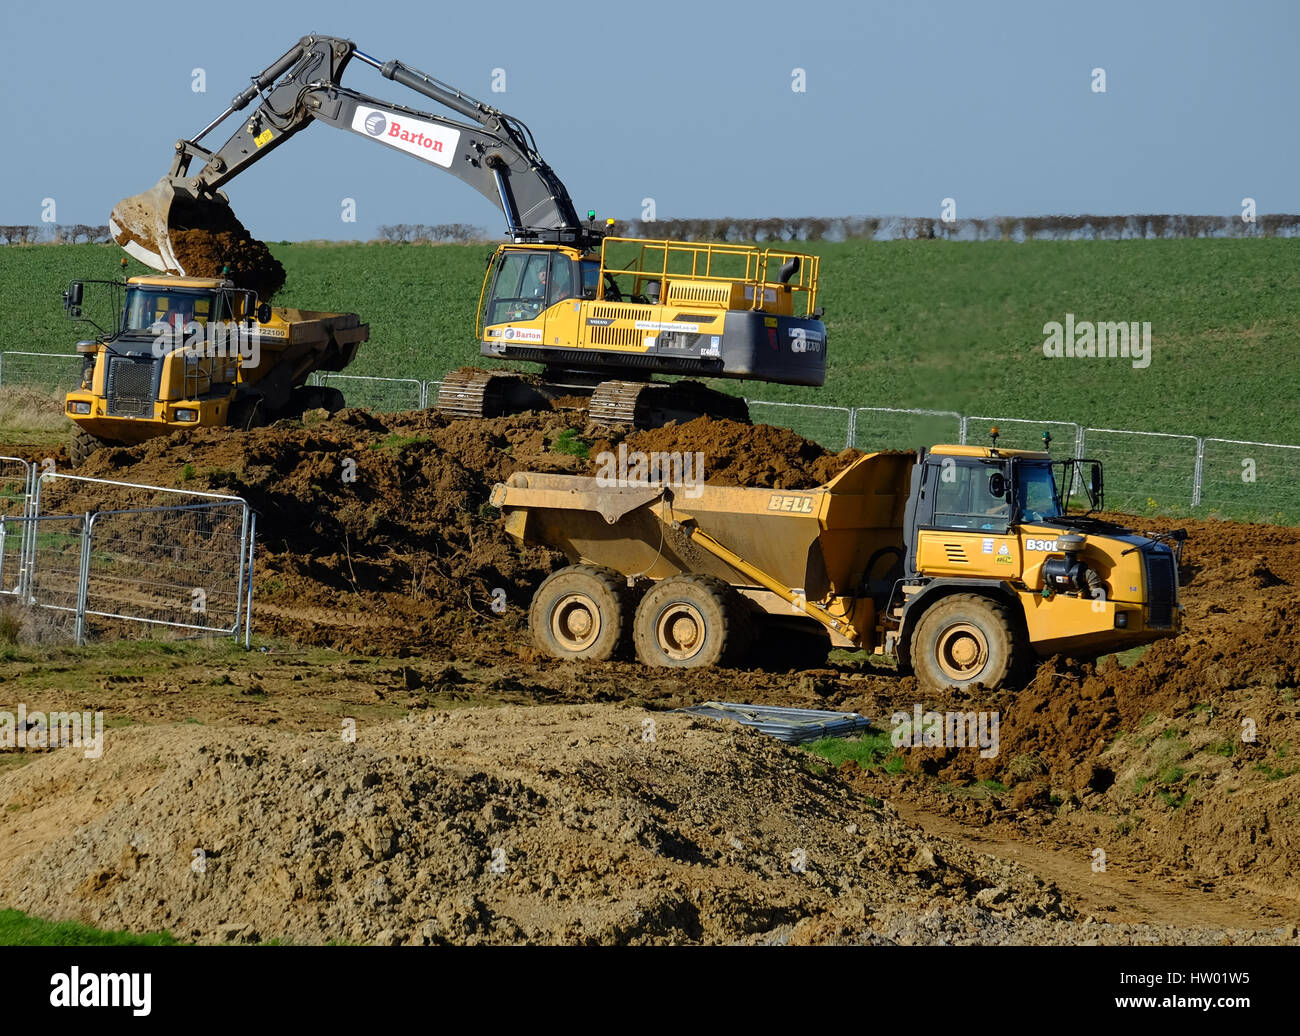 La machinerie lourde utilisée dans la préparation de la terre pour la construction de maisons, Grantham, Lincolnshire, Angleterre, Royaume-Uni. Banque D'Images